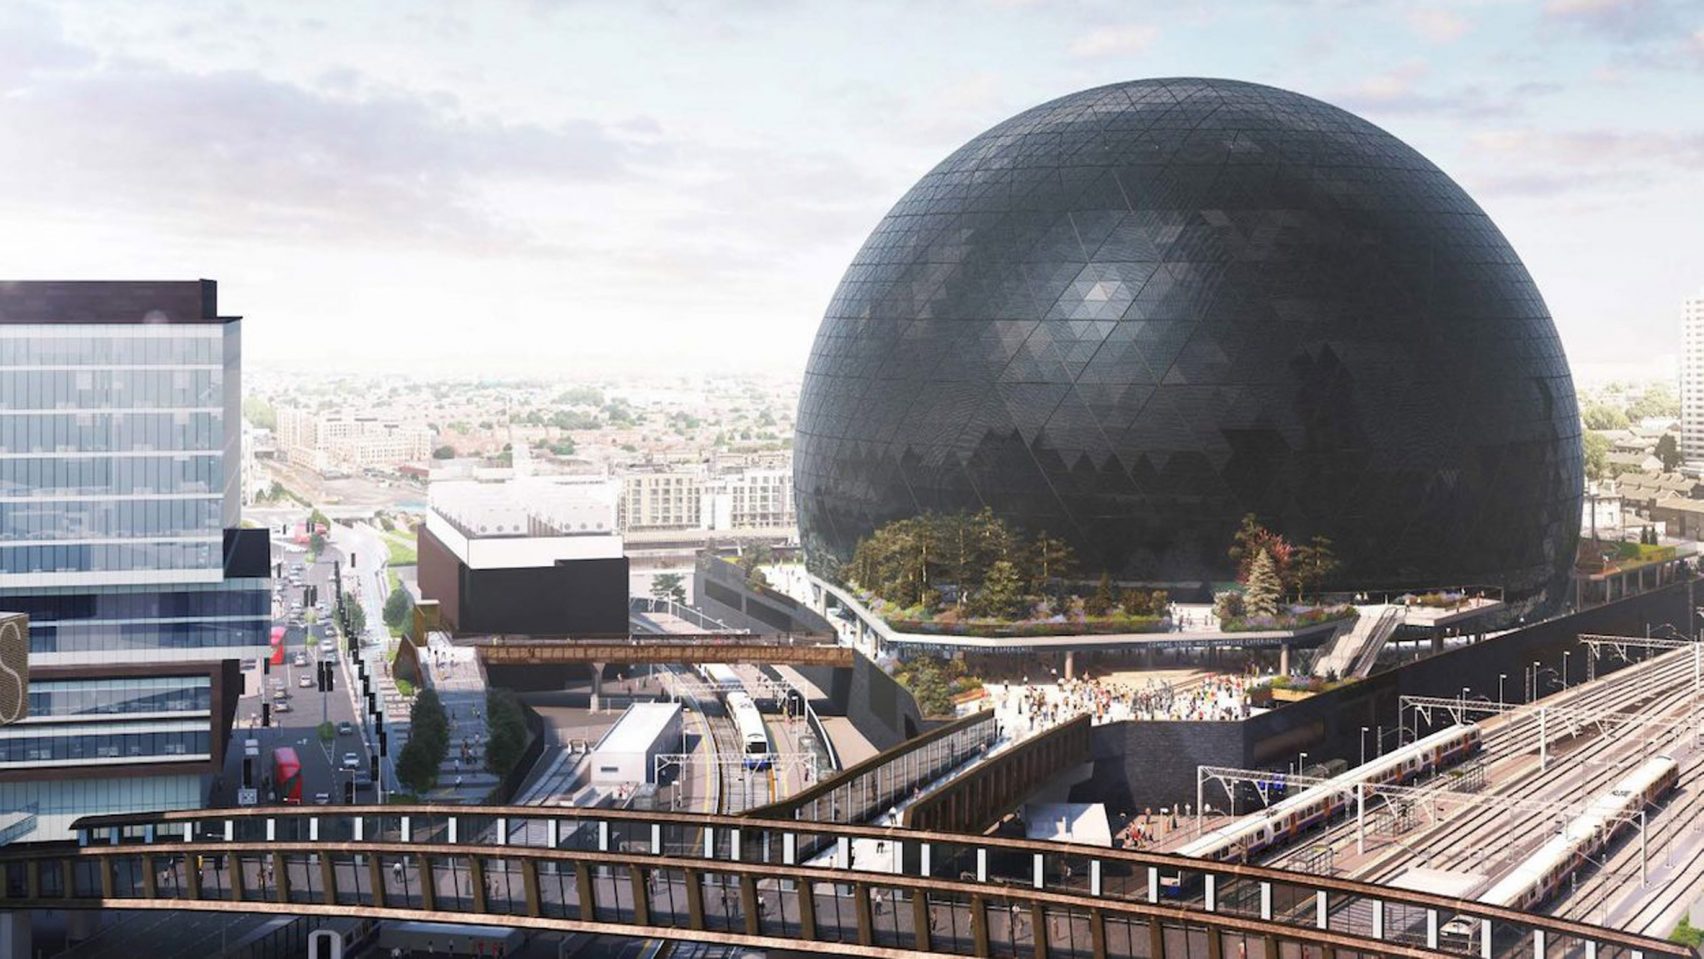 Планы MSG Sphere London «захвачены мэром», говорят создатели